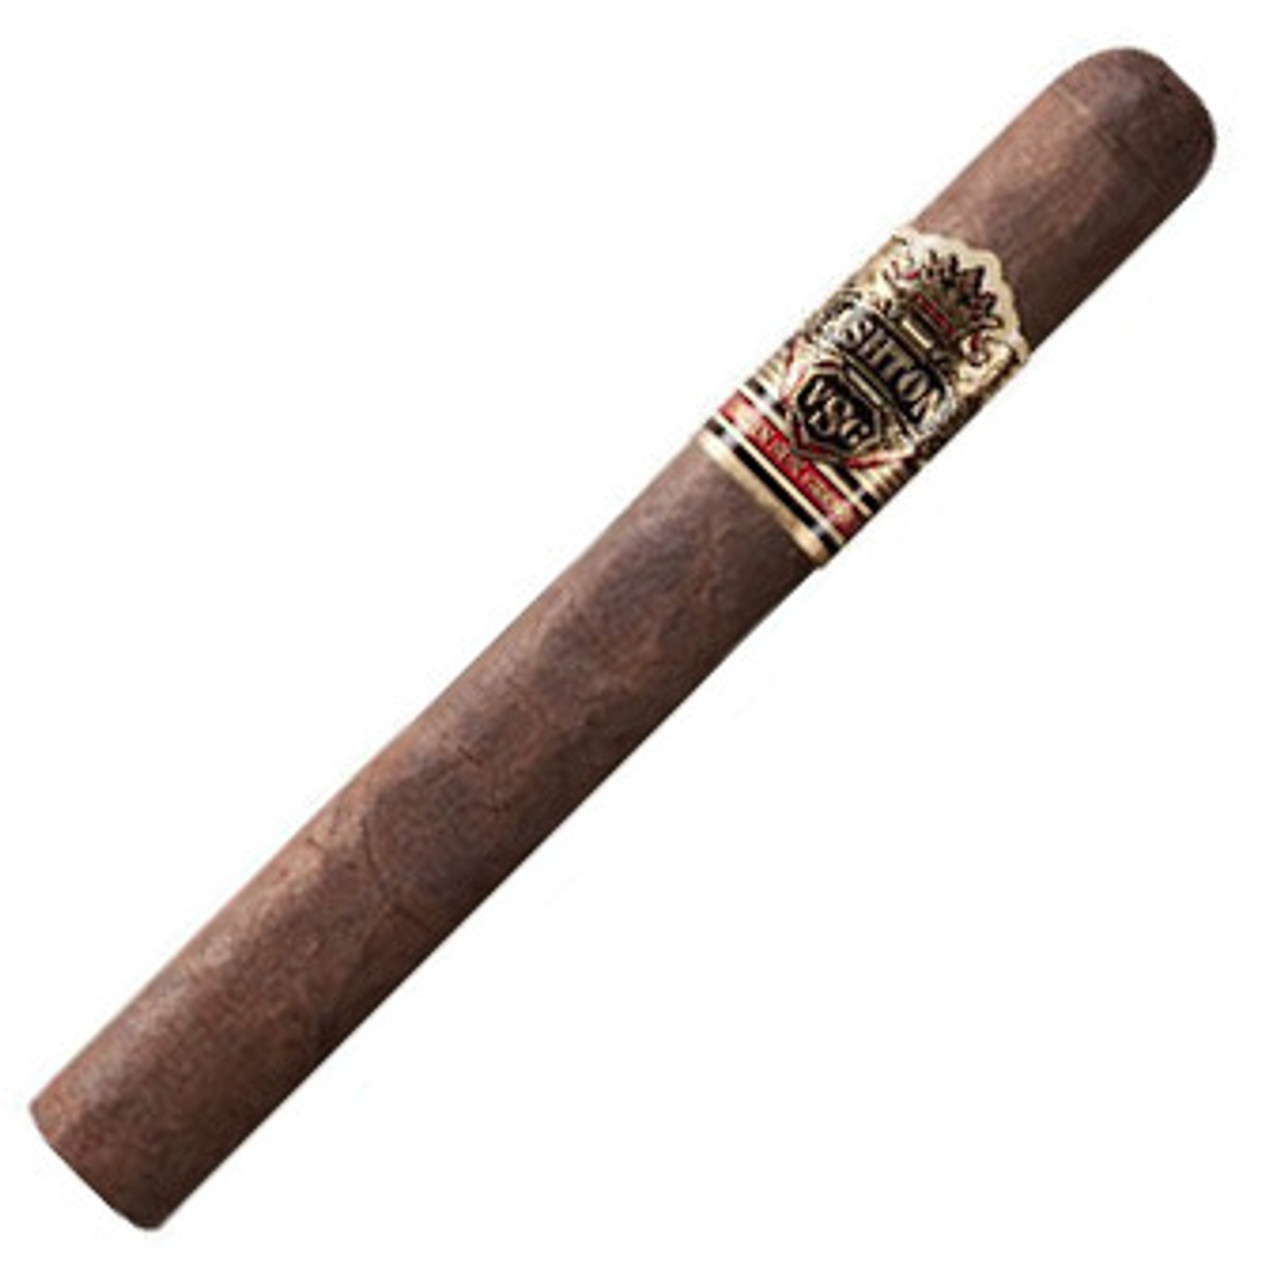 Ashton VSG Corona Gorda Cigars - 5 3/4 x 46 (Cedar Chest of 24)